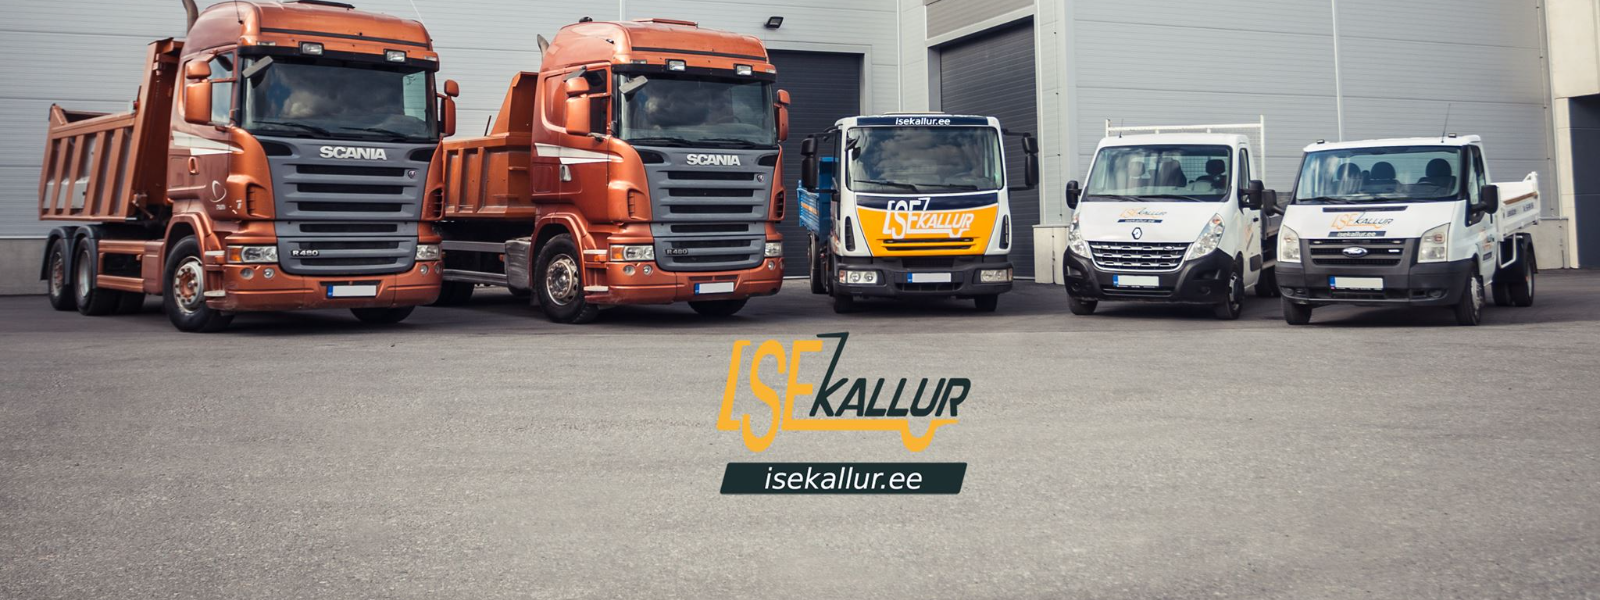 ISEKALLUR TARTU OÜ - Pakume ehitus- ja transporditeenuseid, müües samal ajal kvaliteetseid ehitusmaterjale.